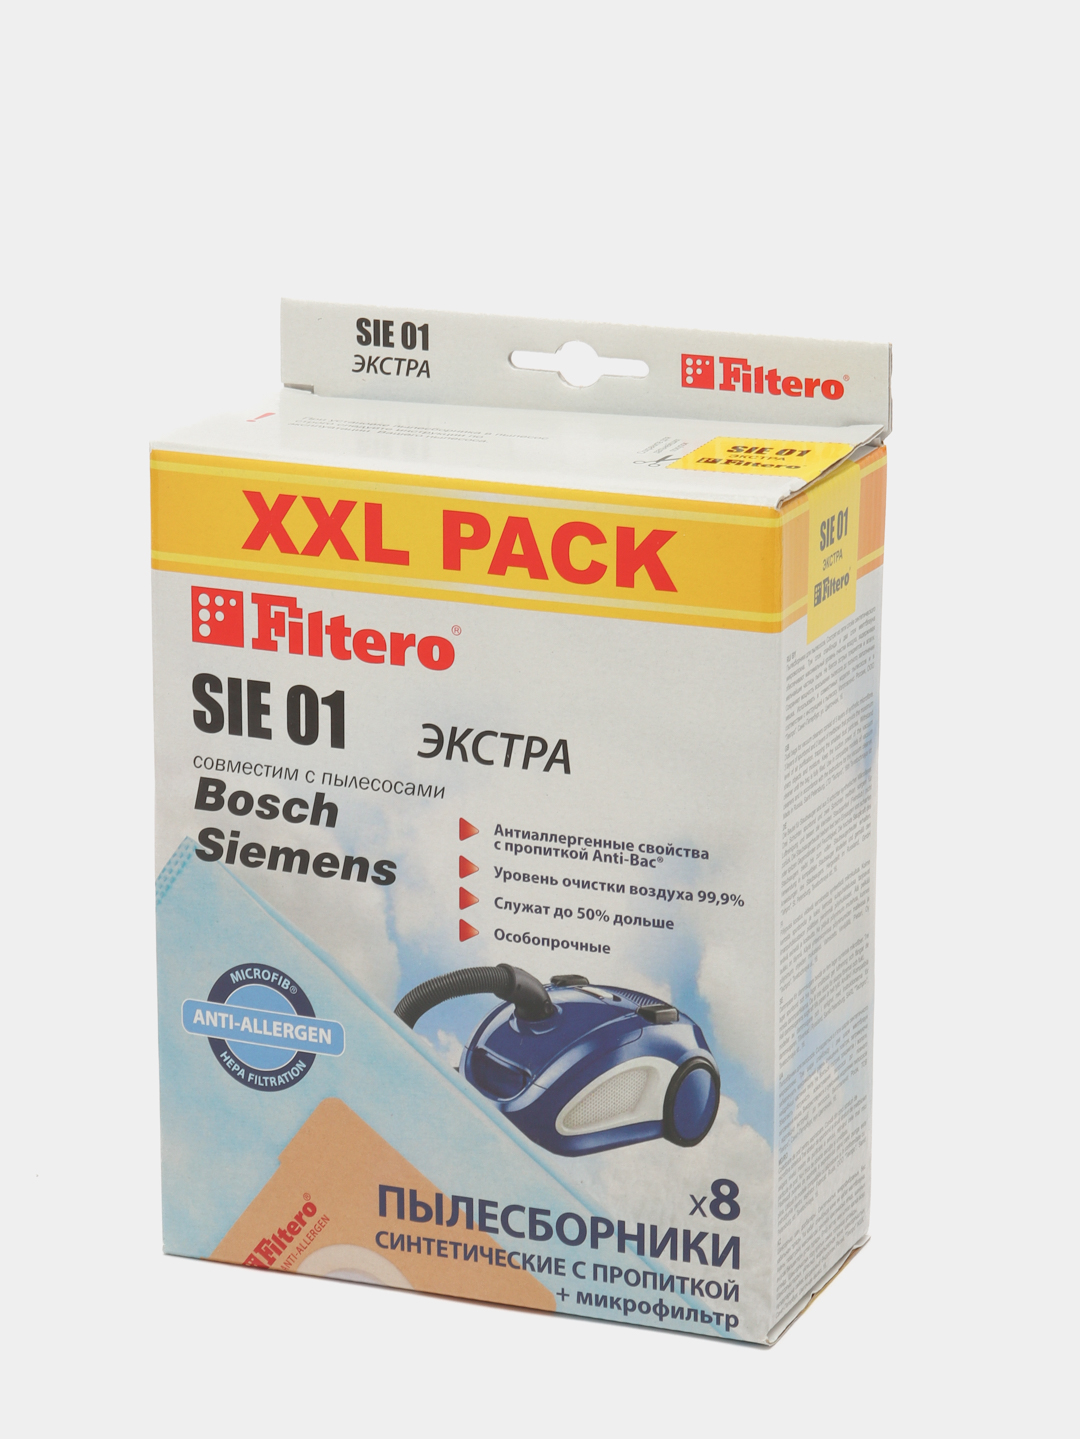 Синтетические мешки-пылесборники Filtero SIE 01 XXL Pack ЭКСТРА Bosch .